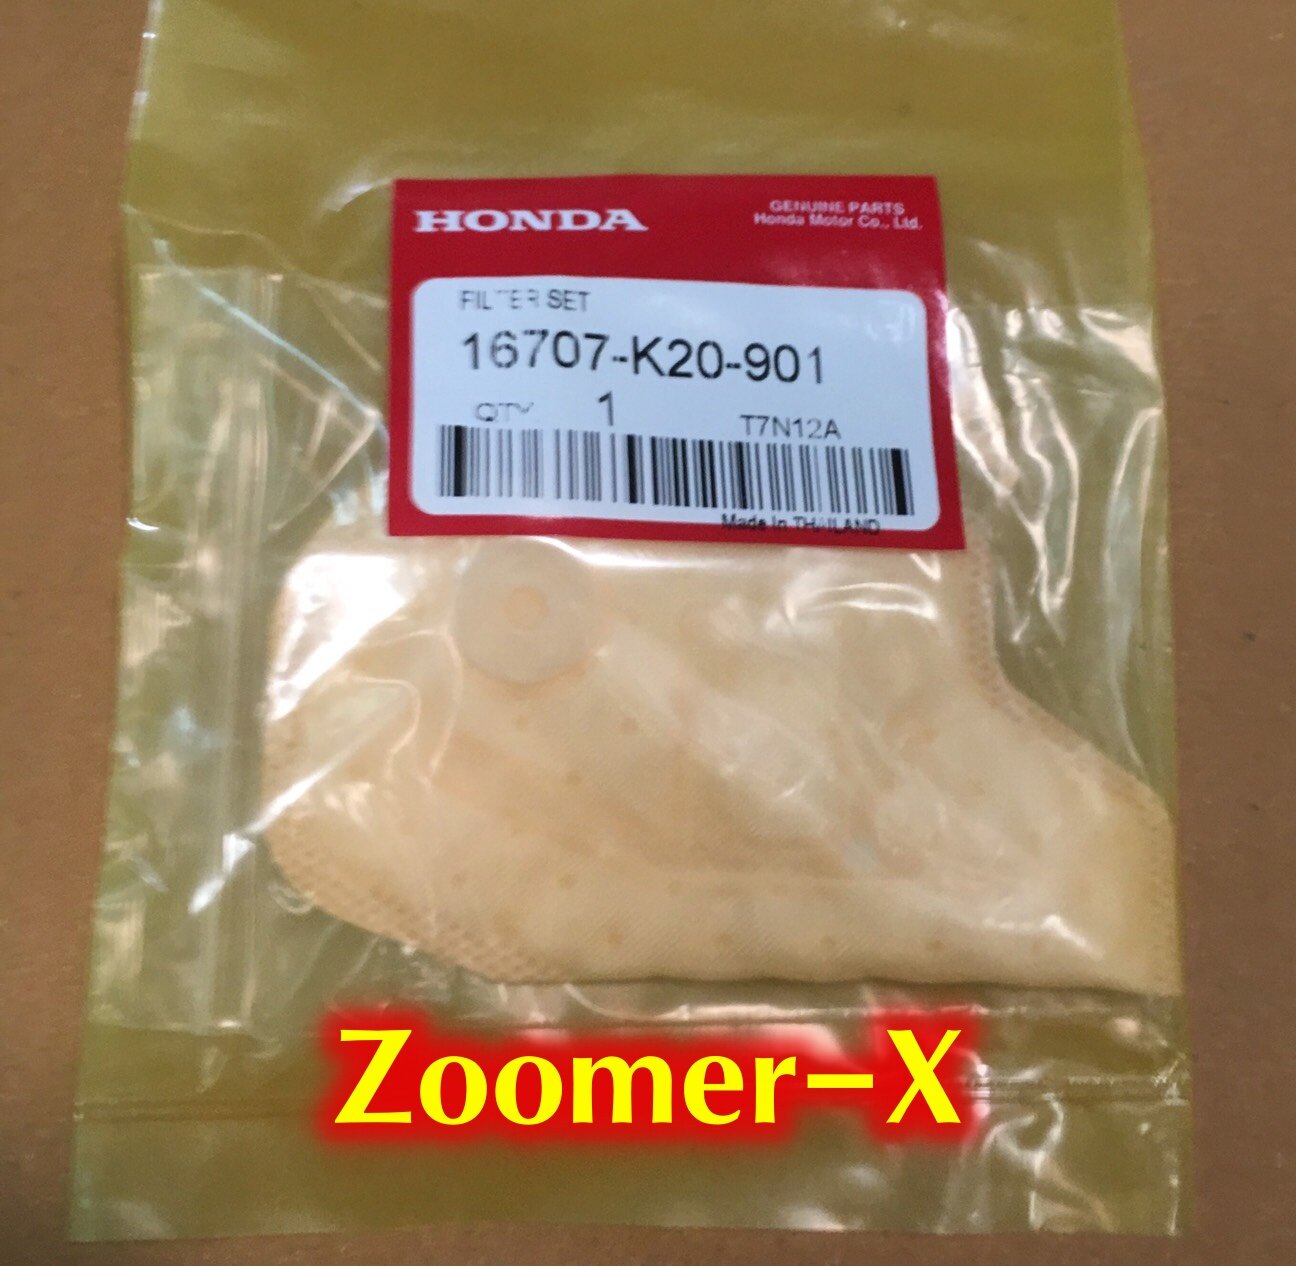 แผ่นกรองปั้มติ๊ก Zoomer X ซูมเมอร์ จำนวน 1 ชิ้น ซูมเมอร์เอ็กซ์ ซูเมอร์ กรองน้ำมัน กรองน้ำมันปั้มติ๊ก ผ้ากรอง